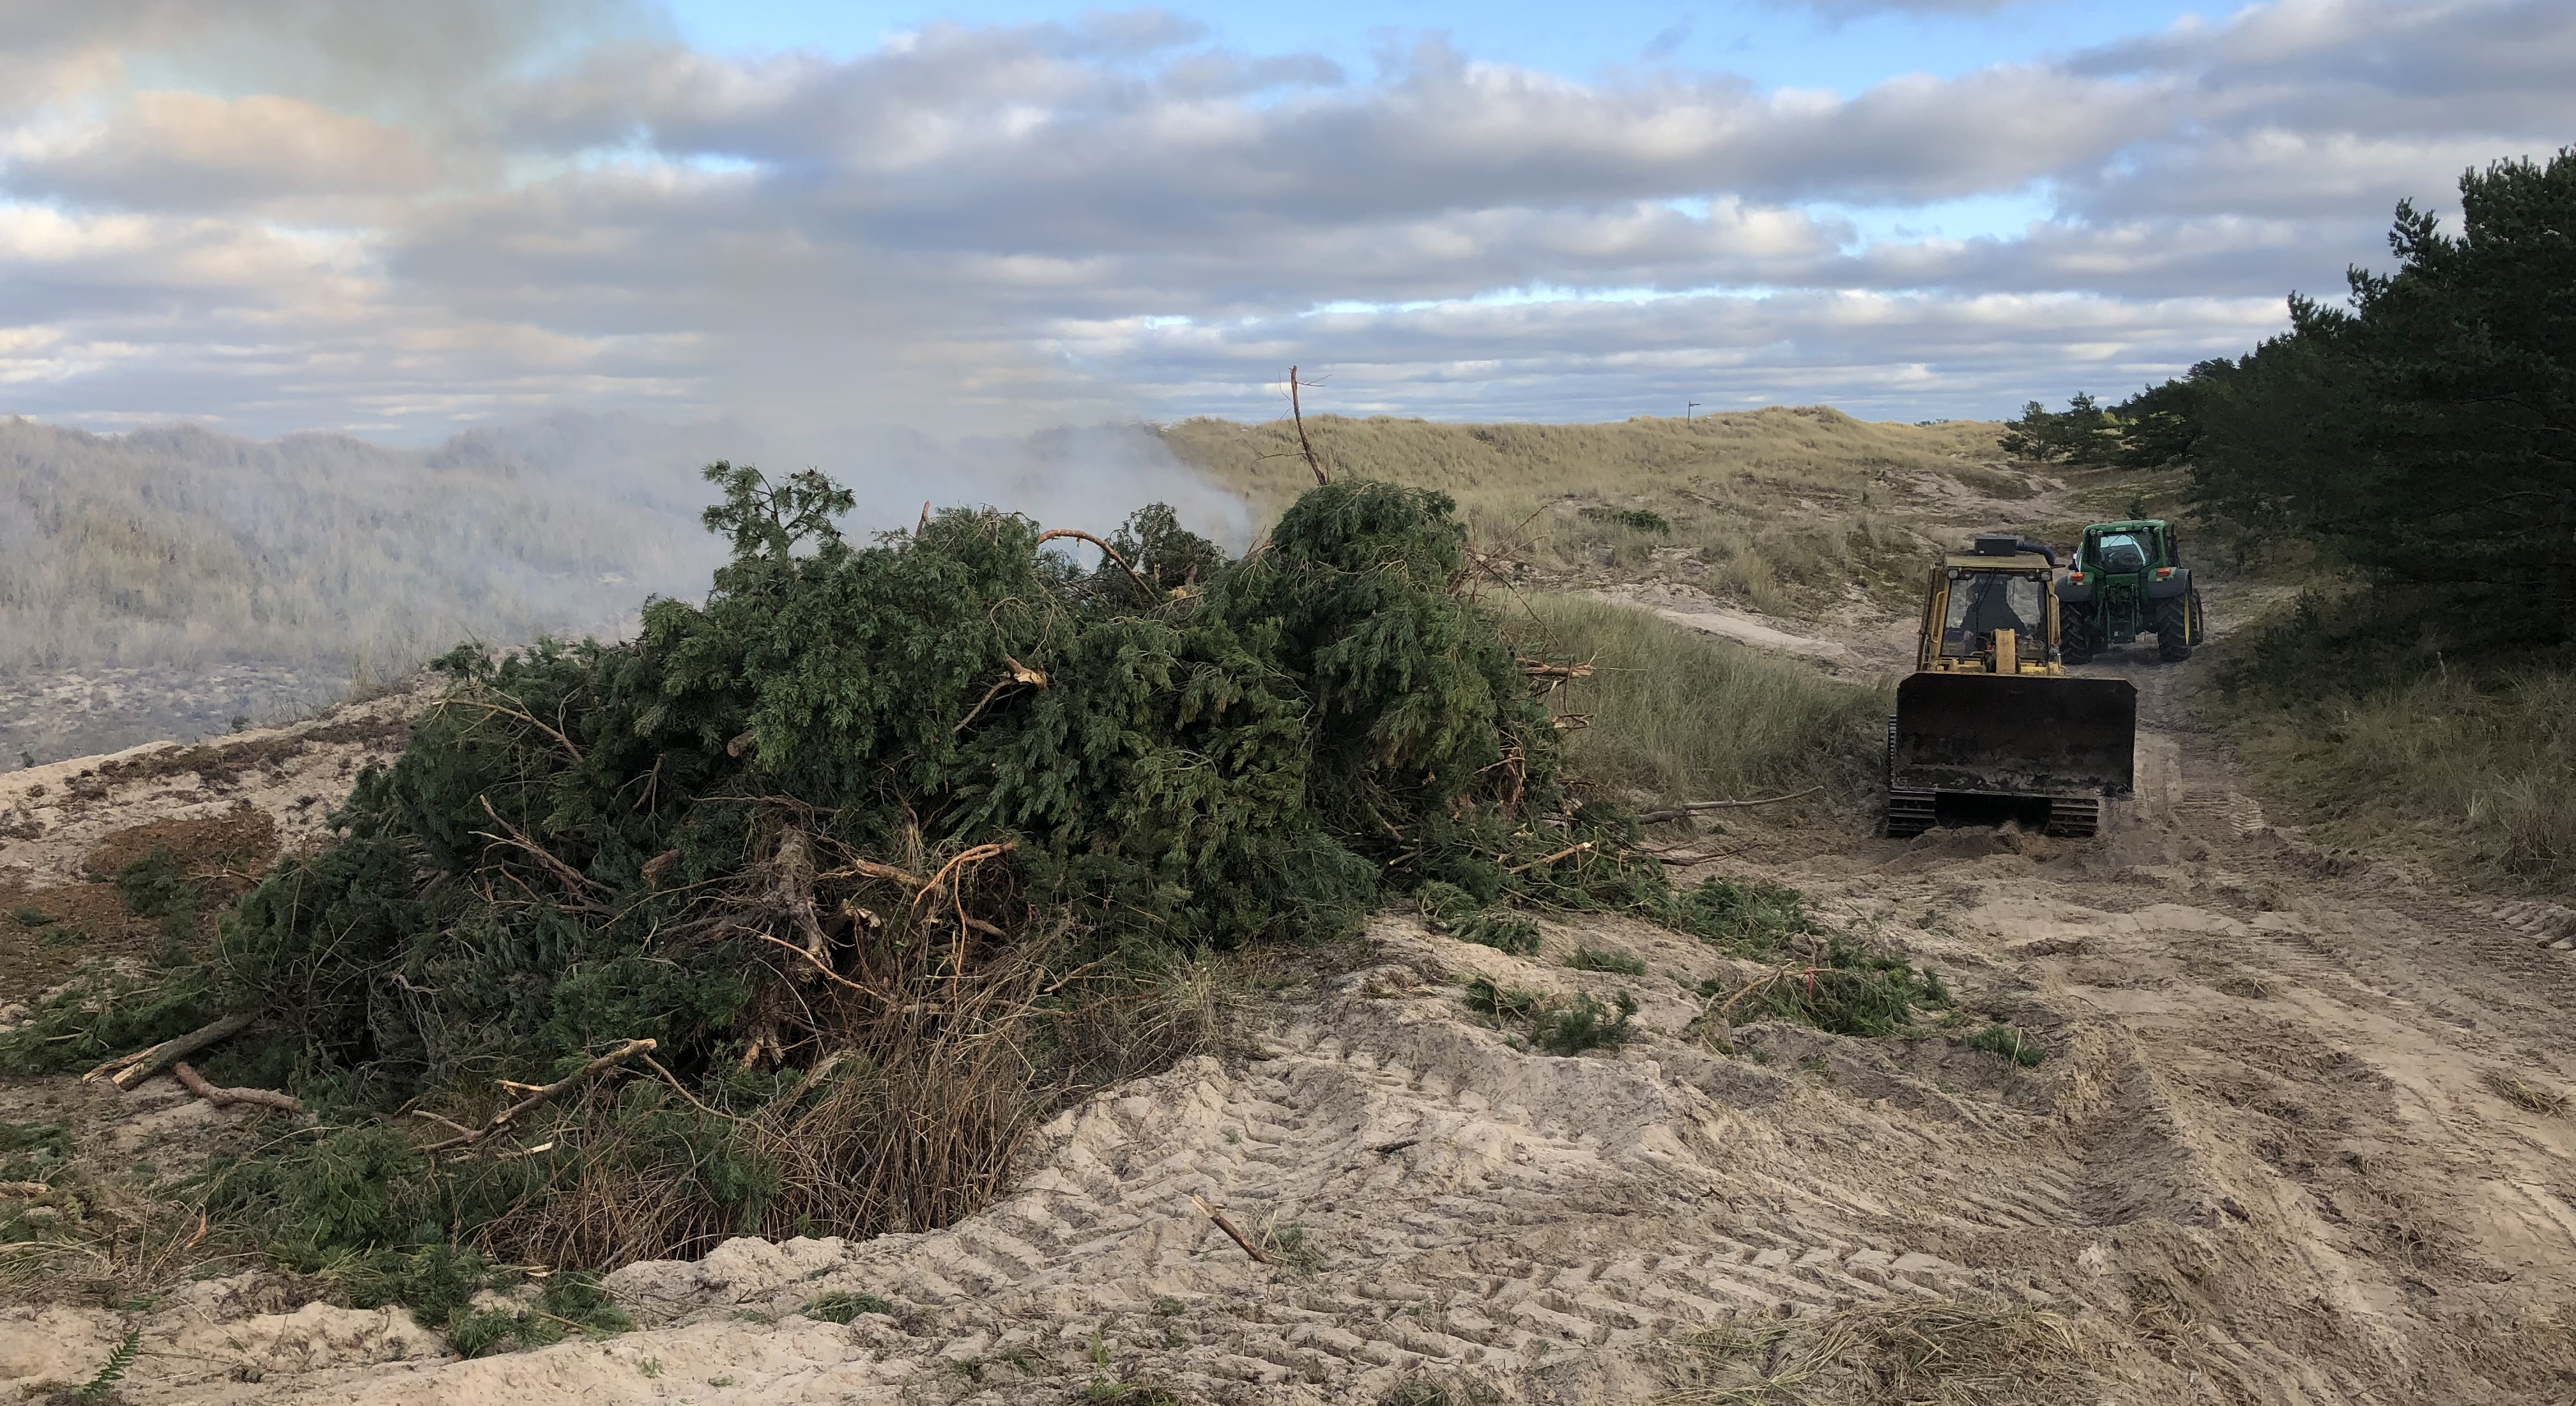 Gräsbeklädda stranddyner. En stor hög med tallris ligger till vänster i bild och det ryker från högen. Till höger i bild kör två traktorer.